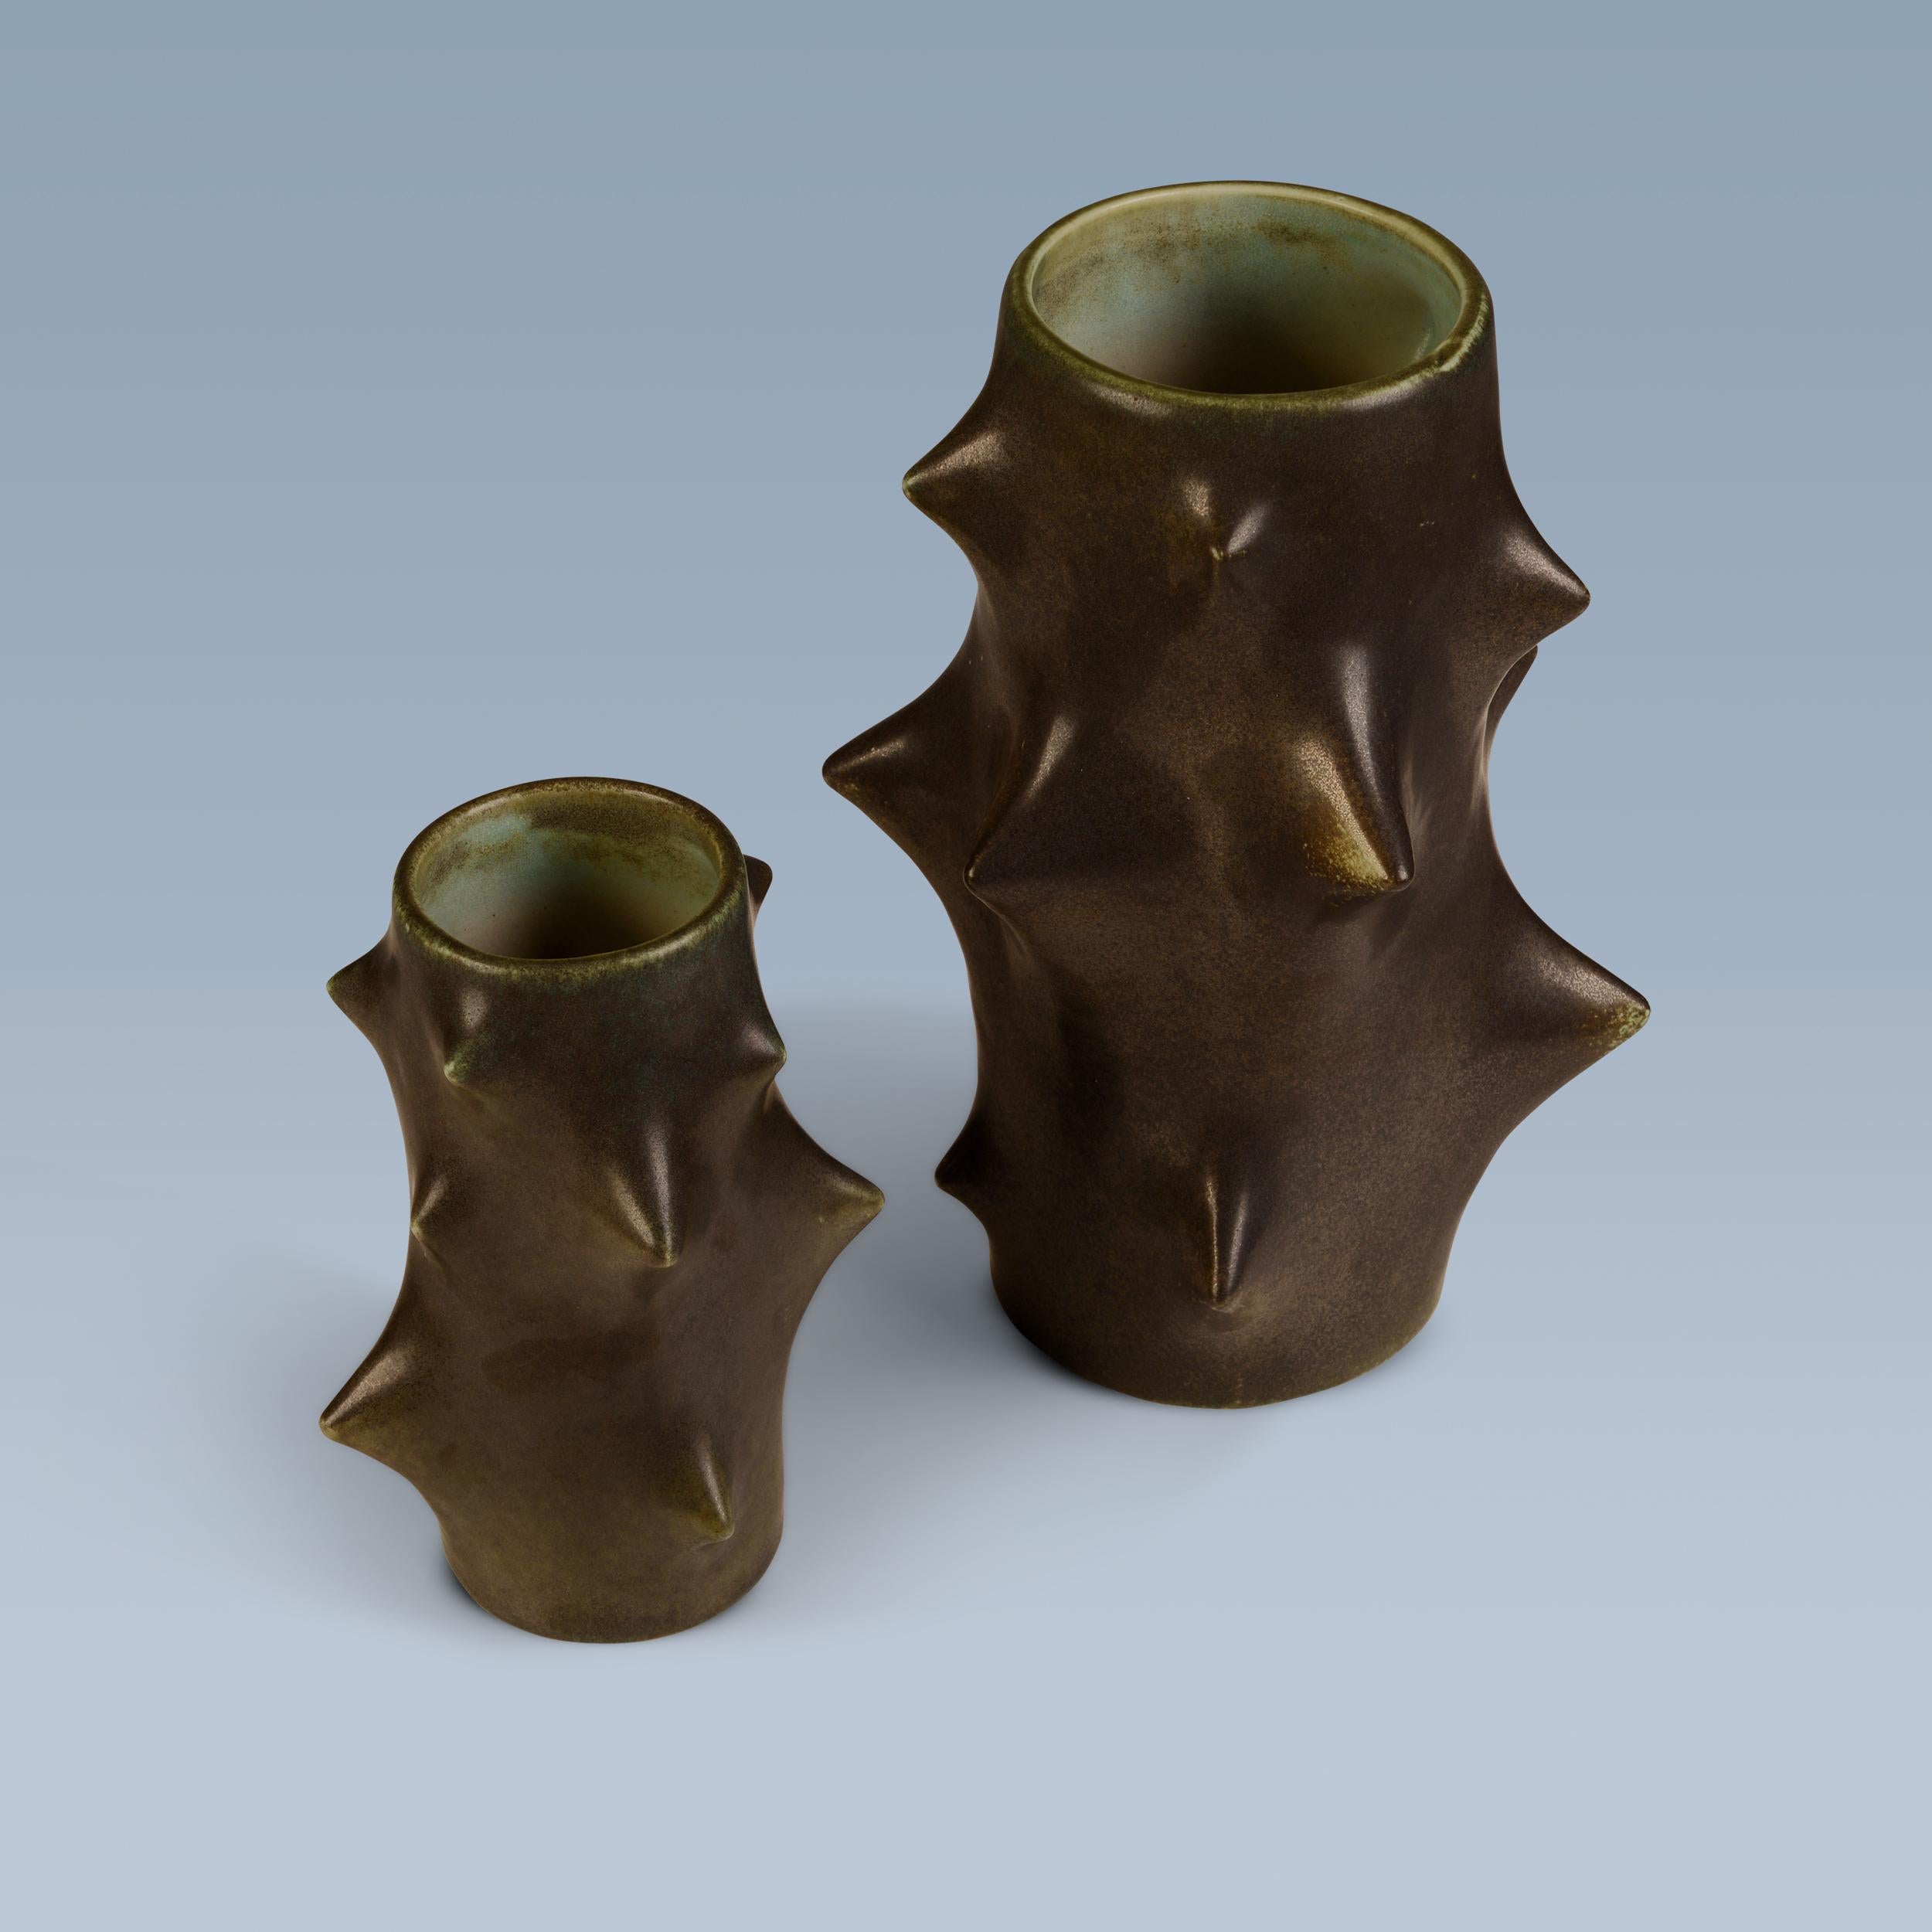 Ce set de deux vases 'Rosentorn' / épines de roses a été conçu par Knud Basse (1916-1991). Ils ont une forme de cactus et sont décorés d'une glaçure vert foncé.

Fabriqué et marqué par Michael Andersen & Son, Bornholm. Le Danemark.

Signé avec le